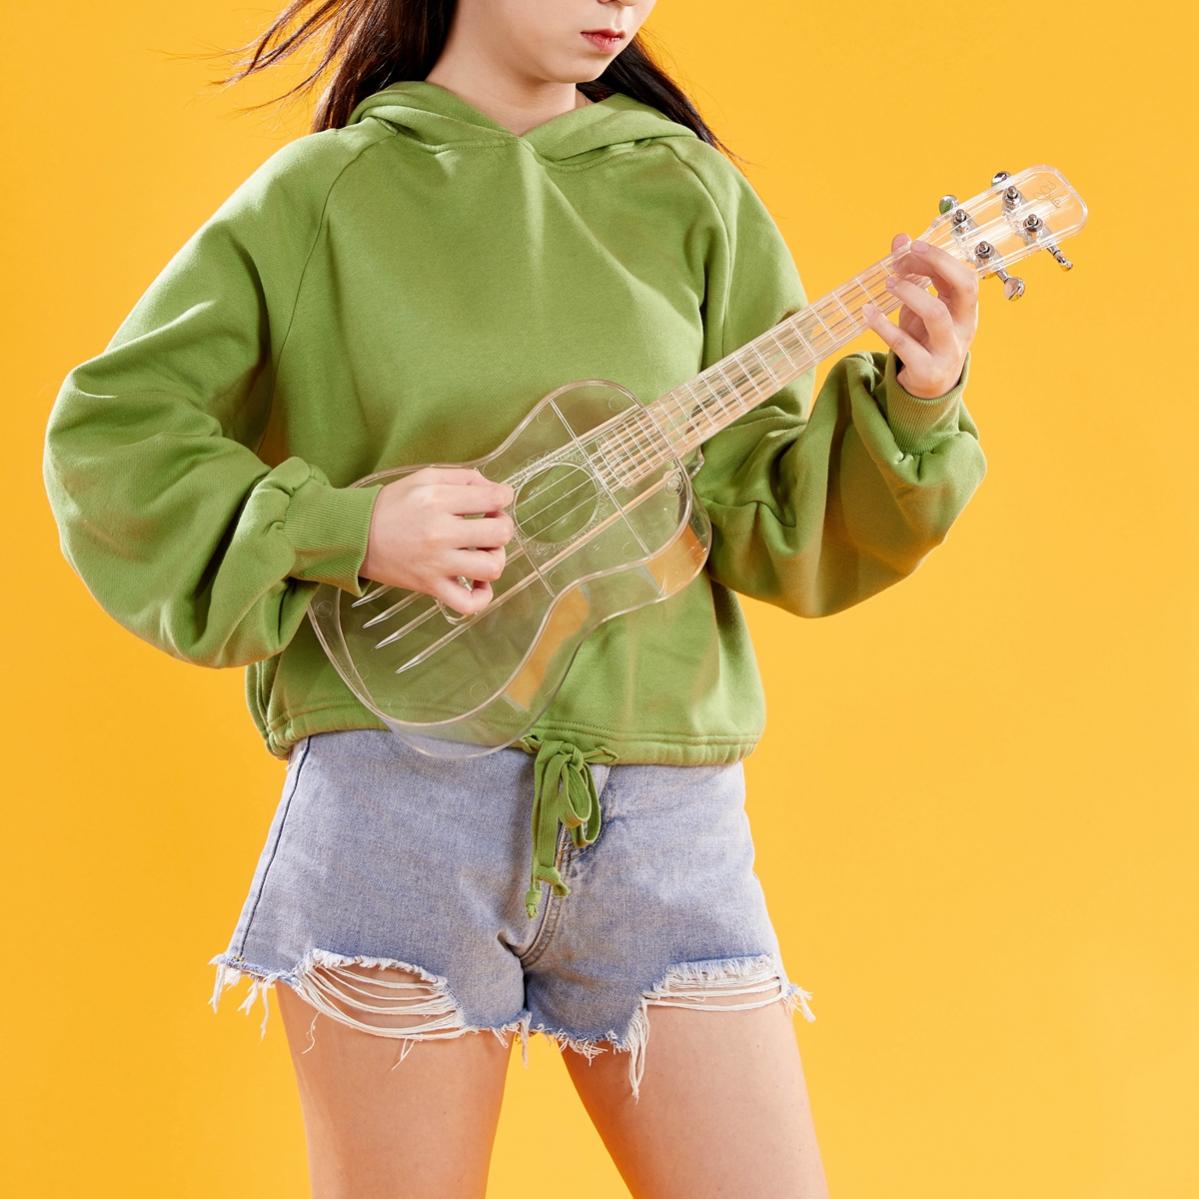 23 pouces Concert ukulélé PC Transparent Unibody léger couleur bonbon 4 cordes guitare Ukelele cadeaux musicaux pour enfants enfants